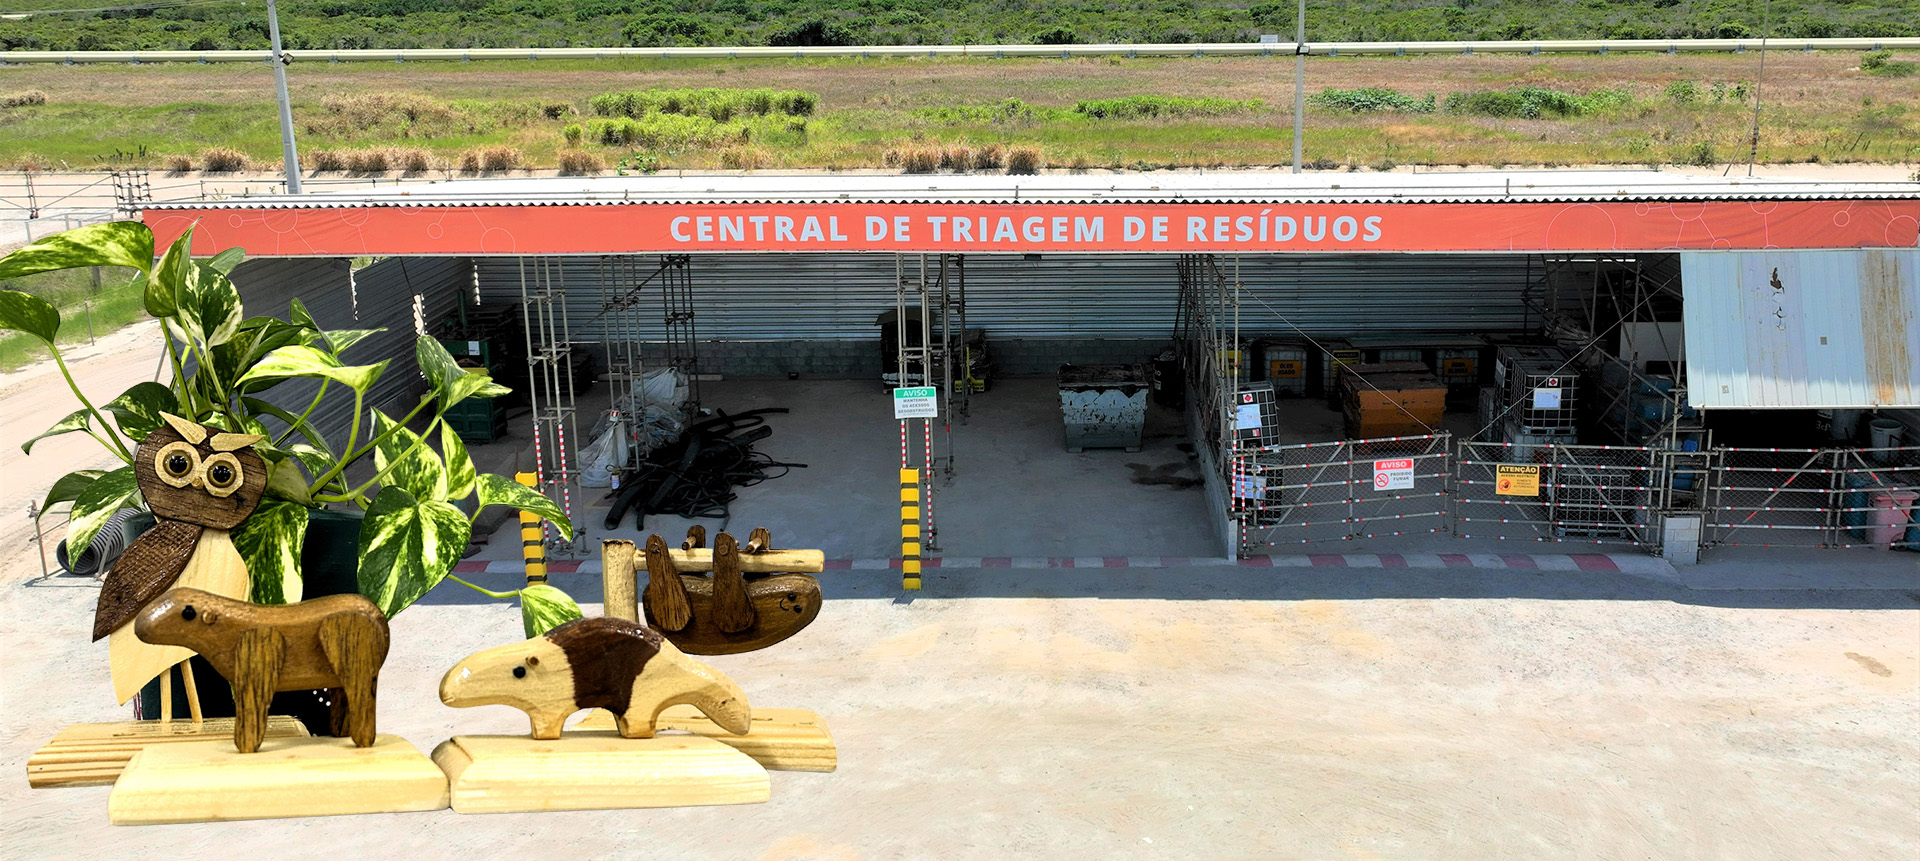 Central de Triagem de Resíduos da GNA promove reaproveitamento de materiais<br>